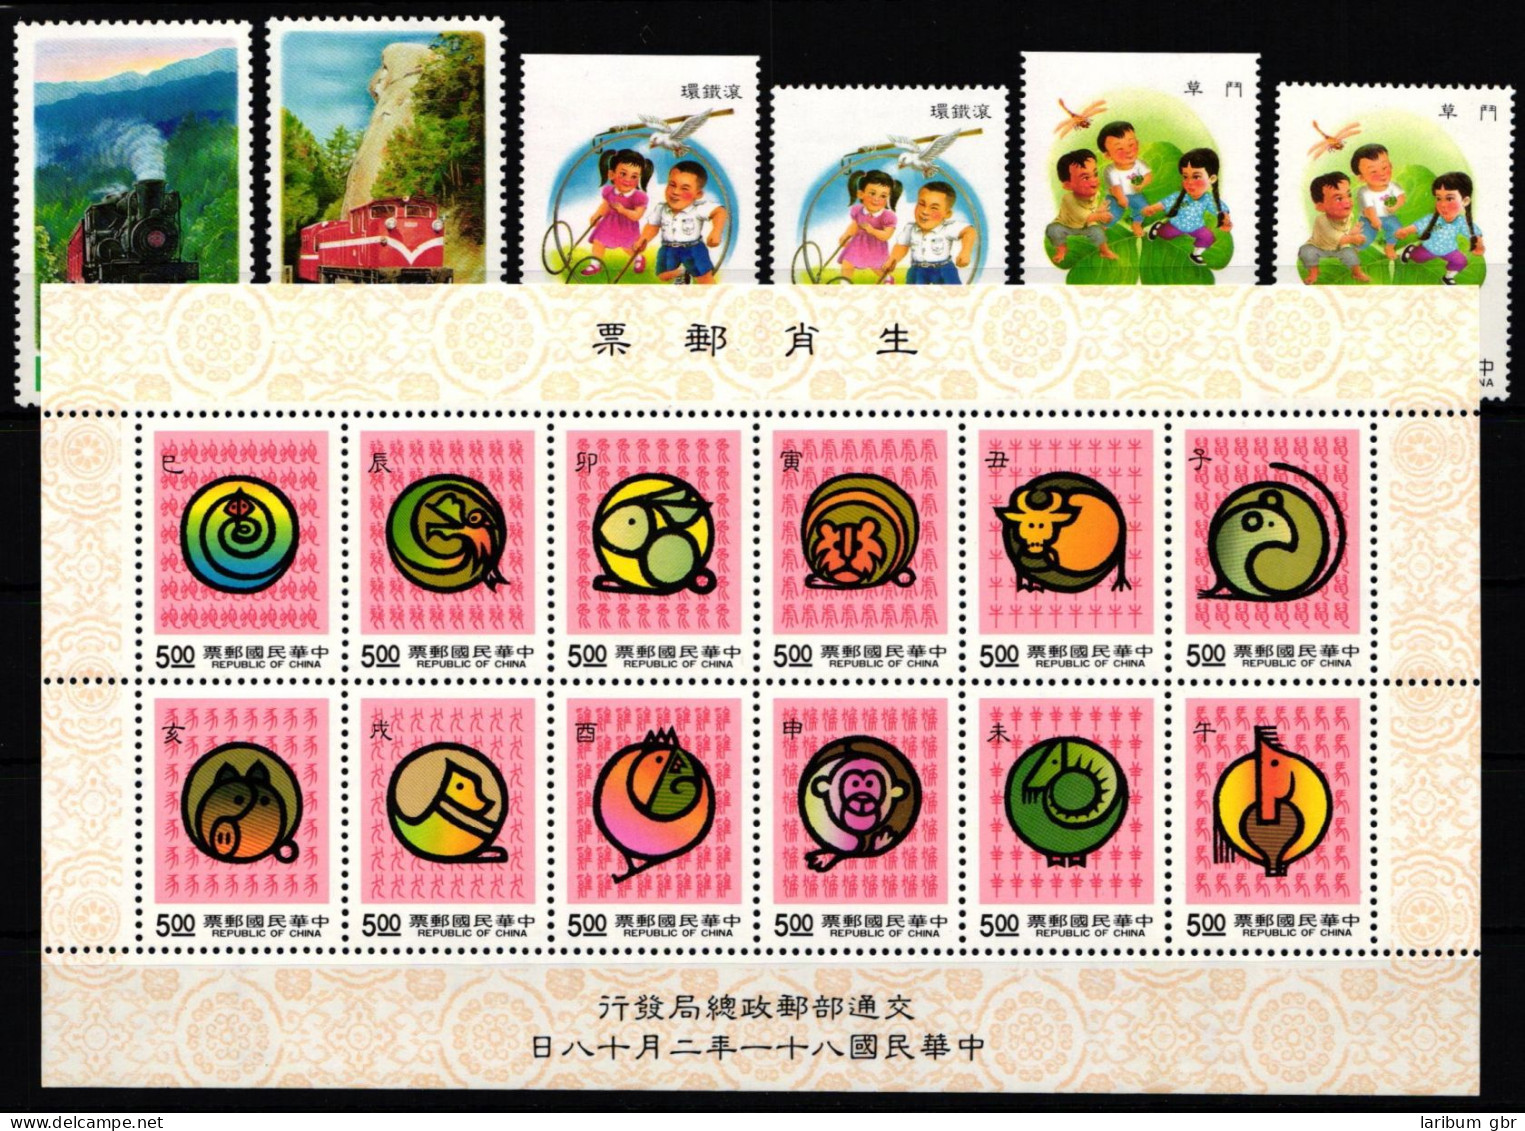 Taiwan Jahrgang 1992 ohne 2093 postfrisch #KX861